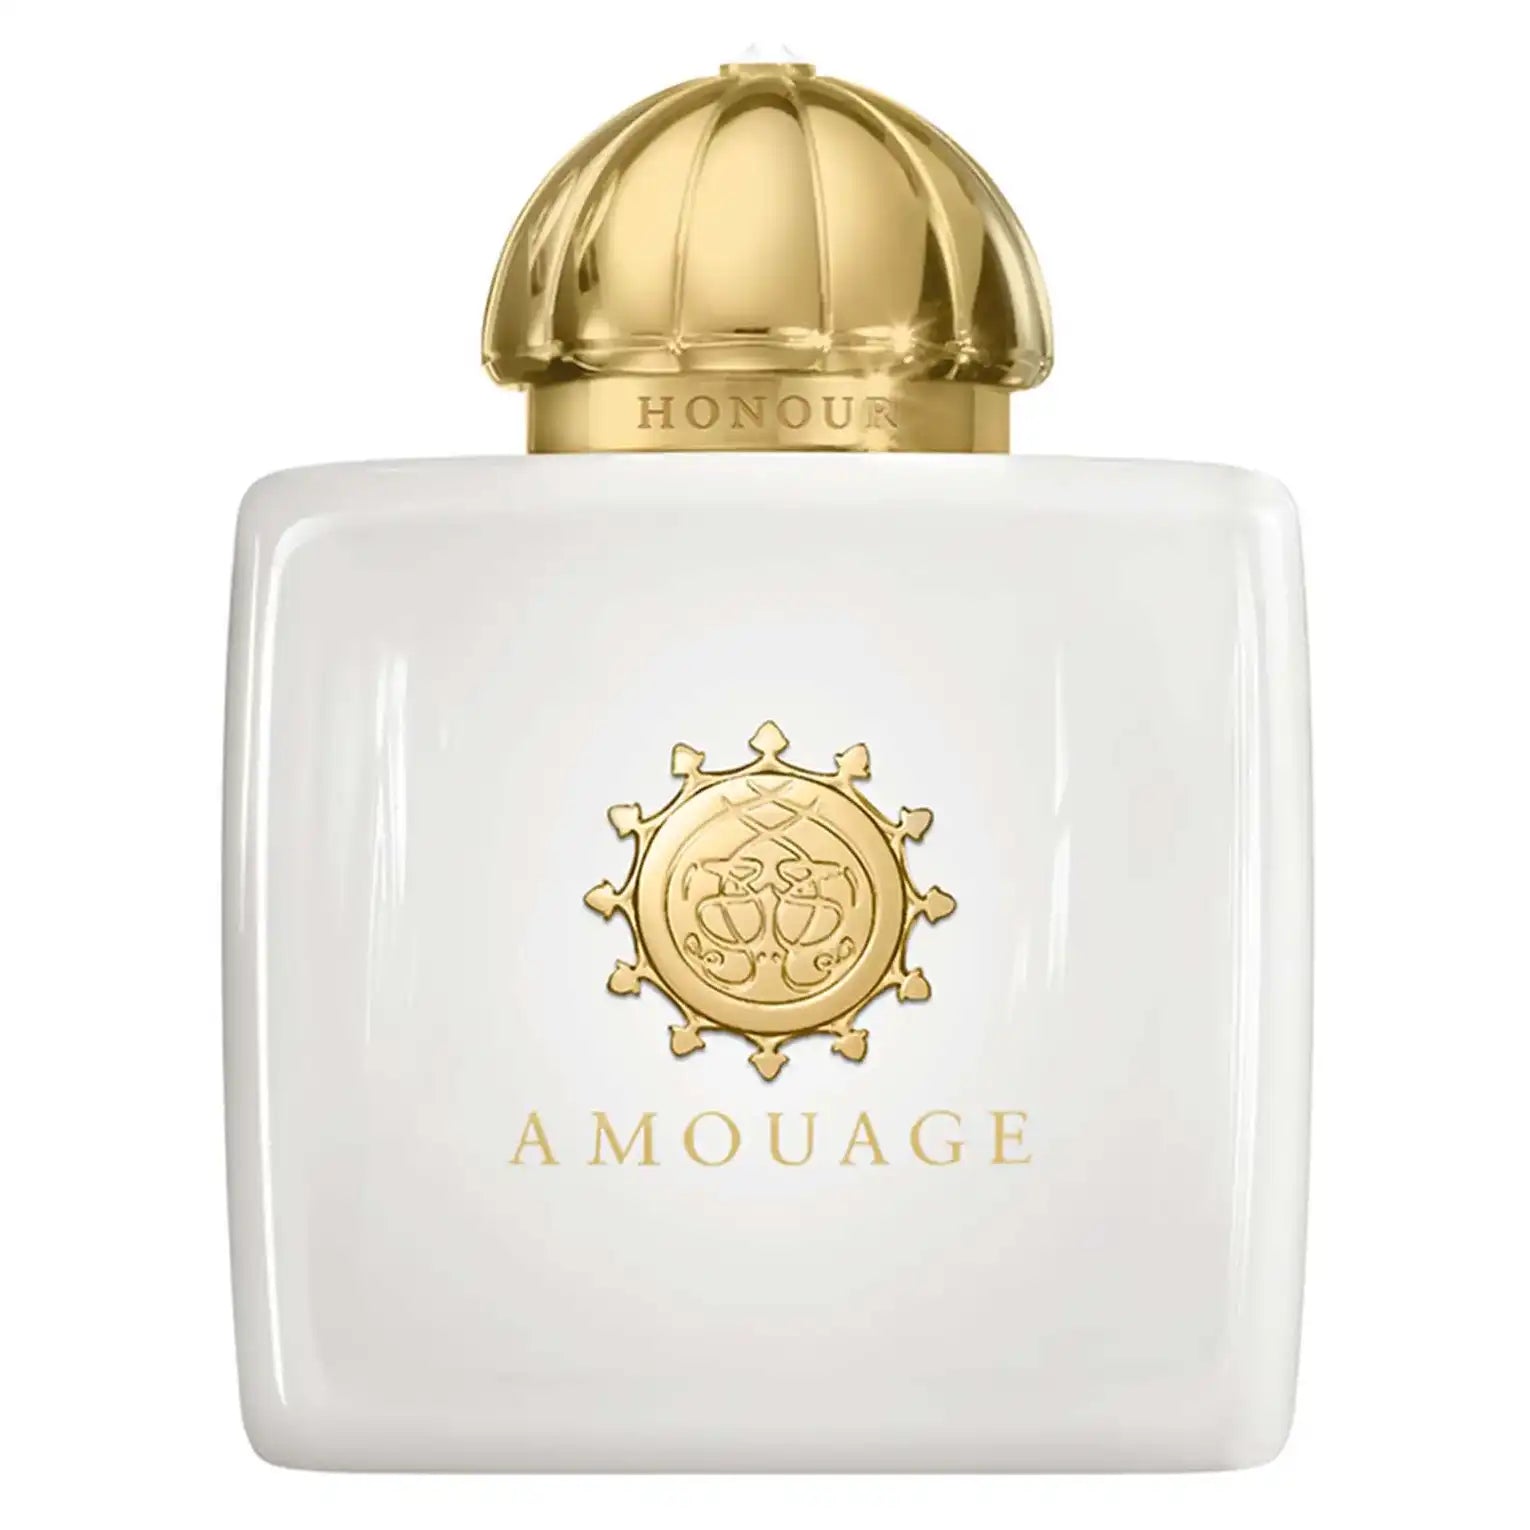 Amouage Honour Woman Eau de Parfum 100ml